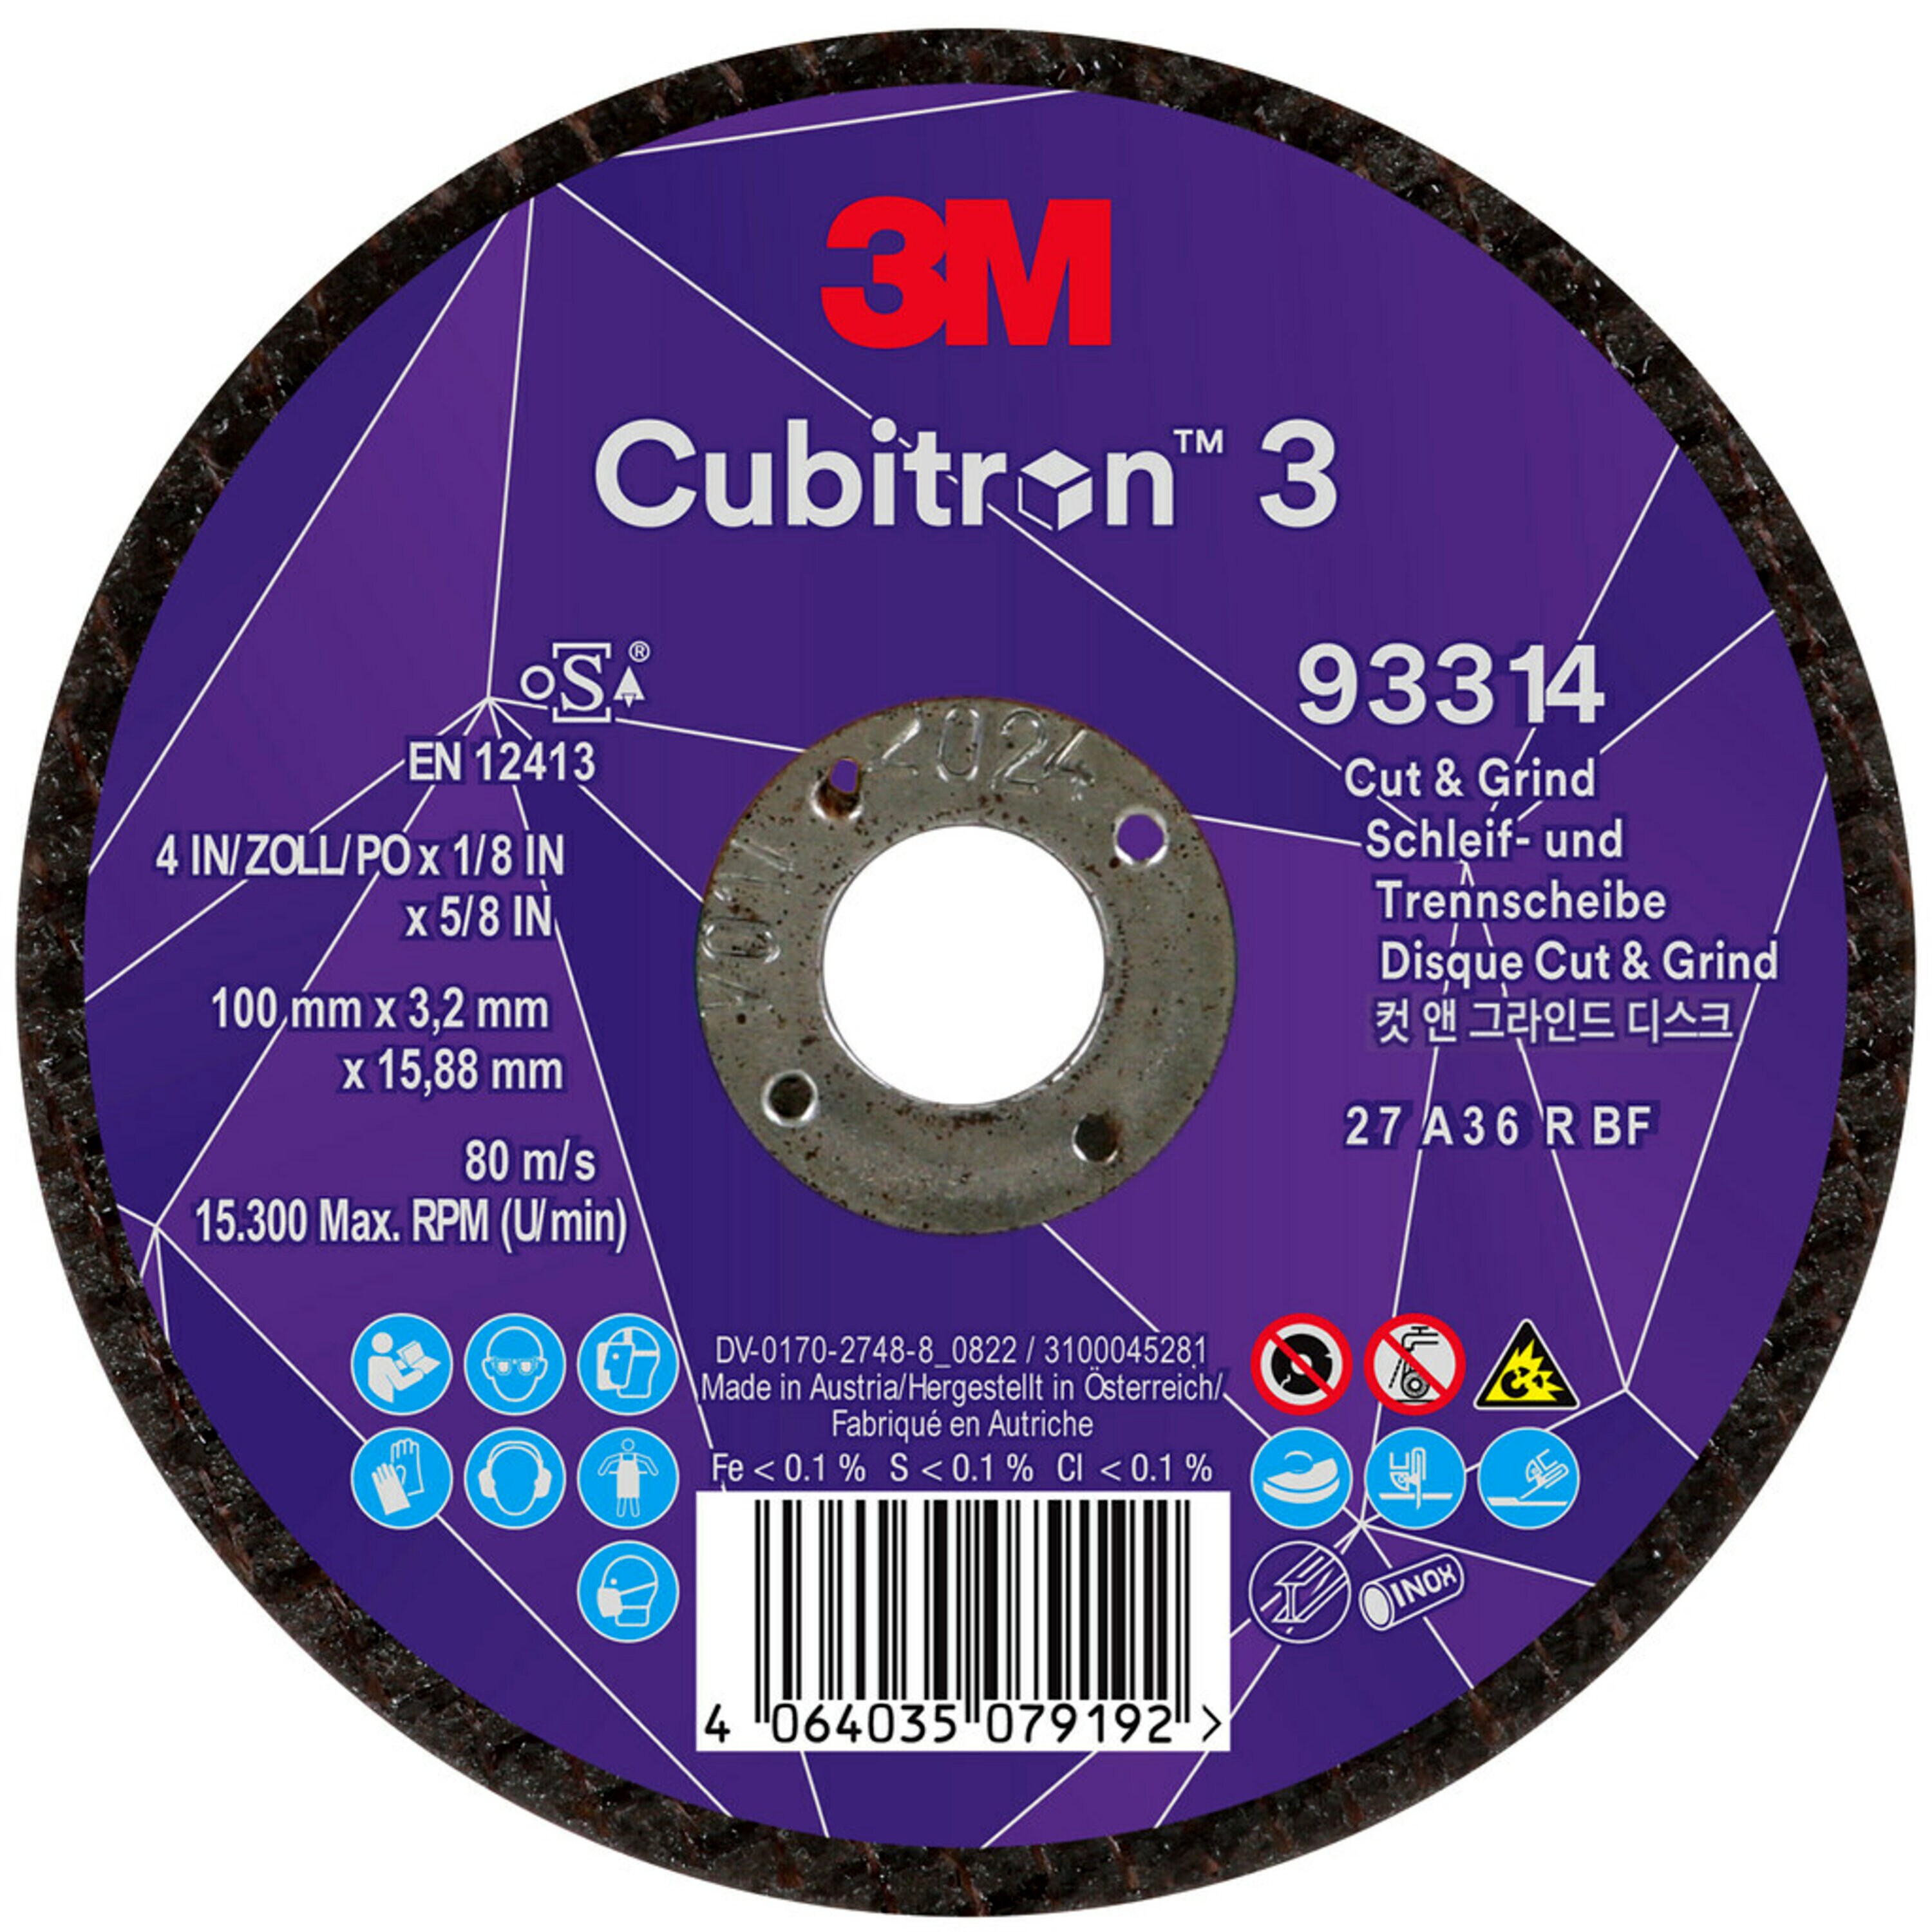 3M Cubitron 3 Cut